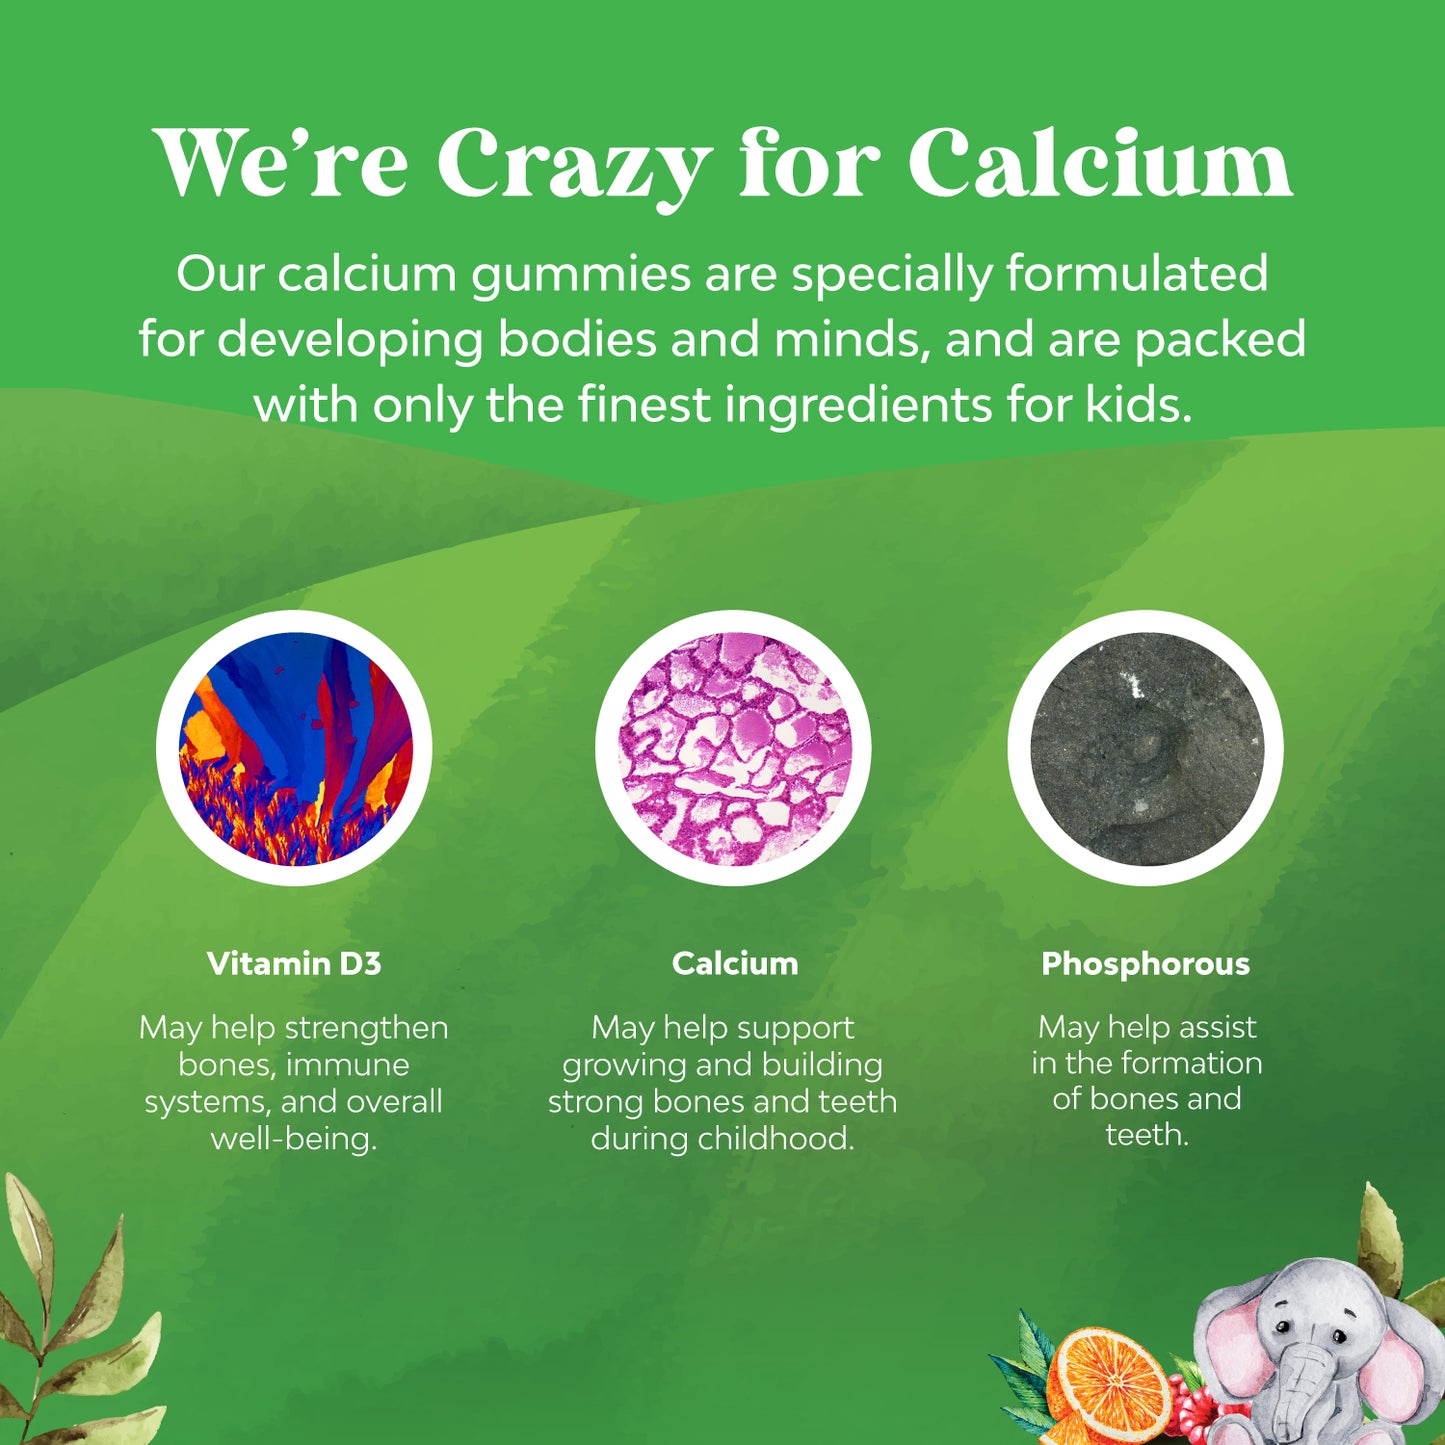 Kids Calcium Gummies - 90 Gummies